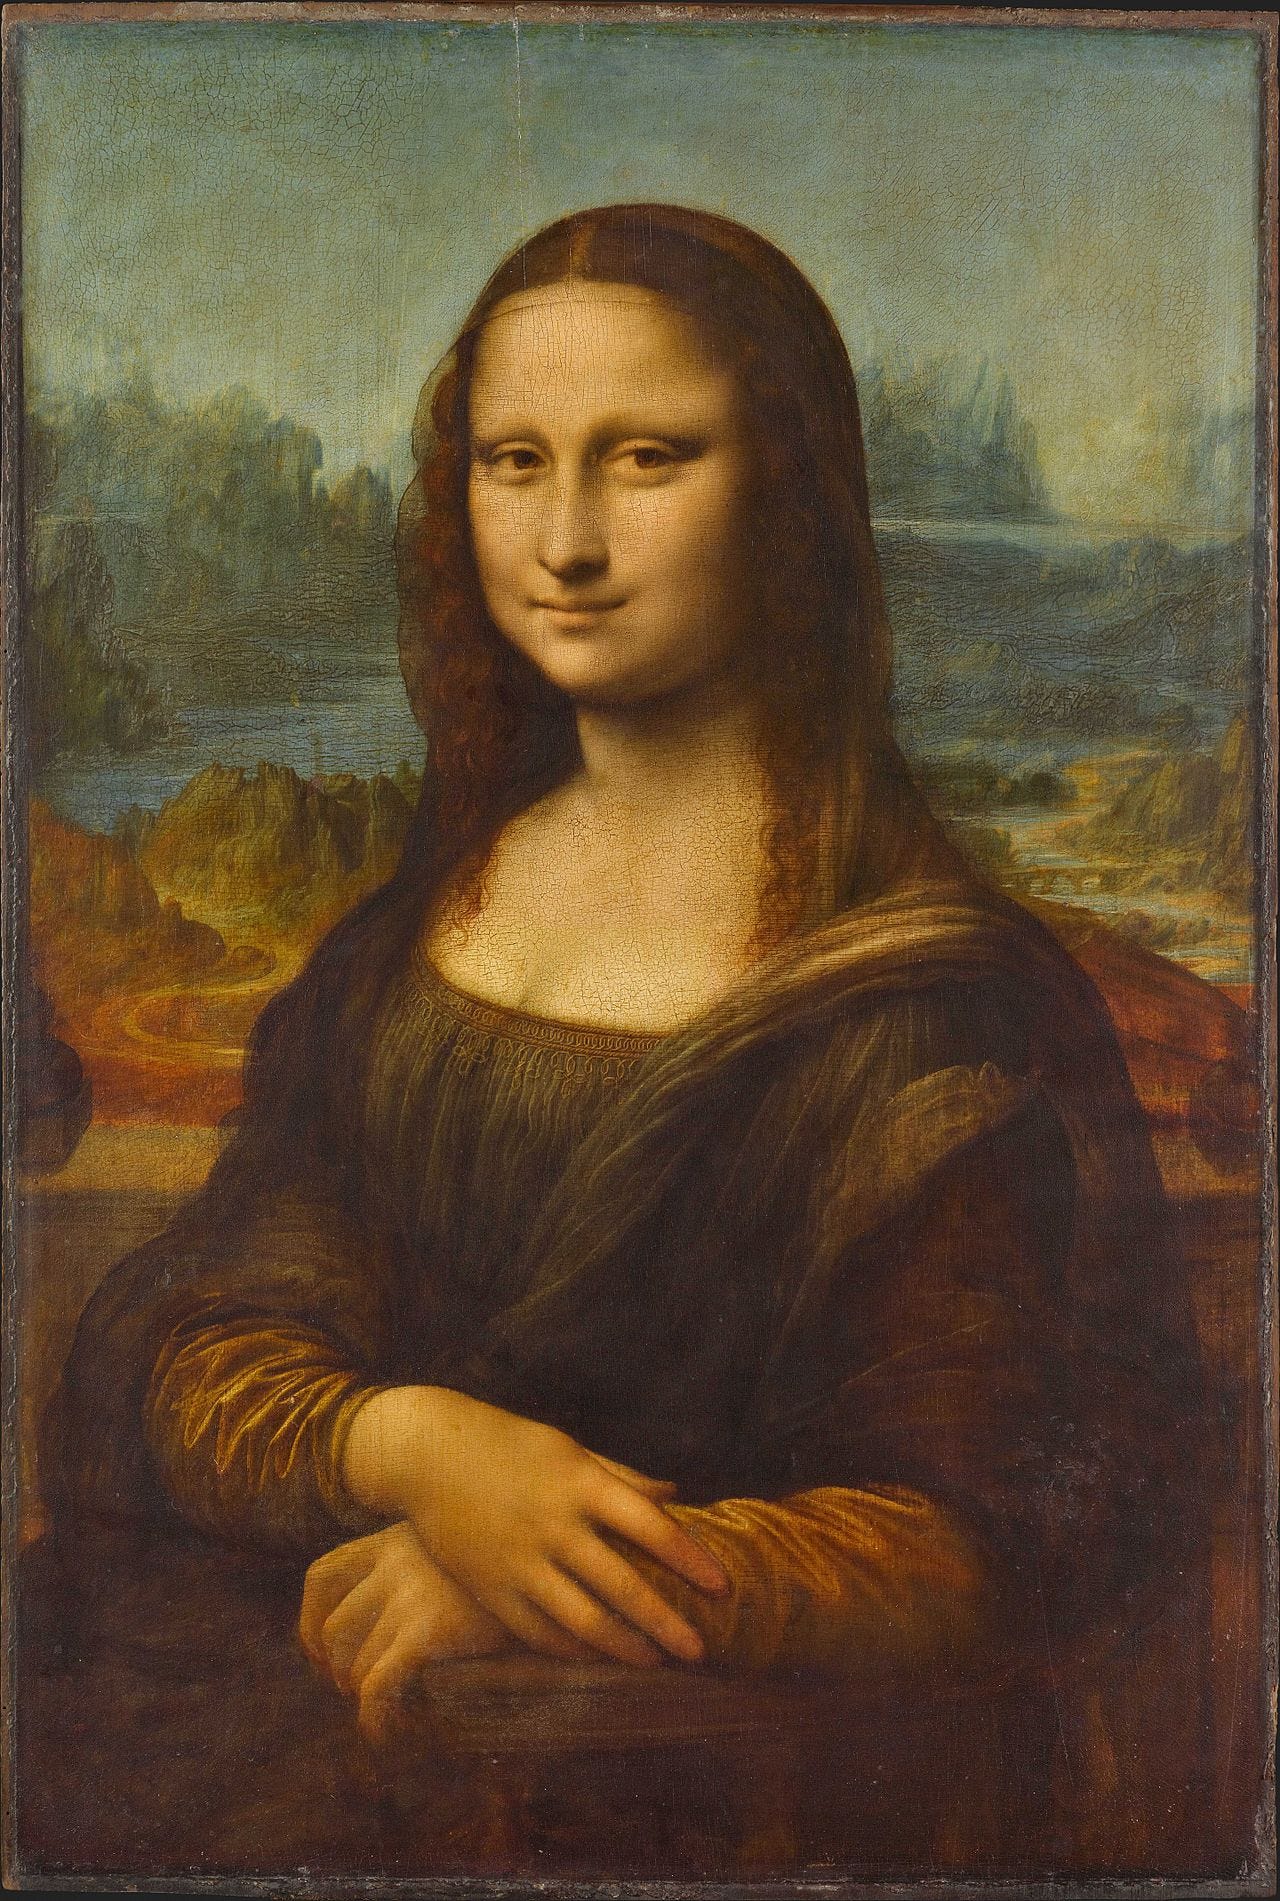 Leonardo da Vinci - Mona Lisa (Louvre, Paris).jpg